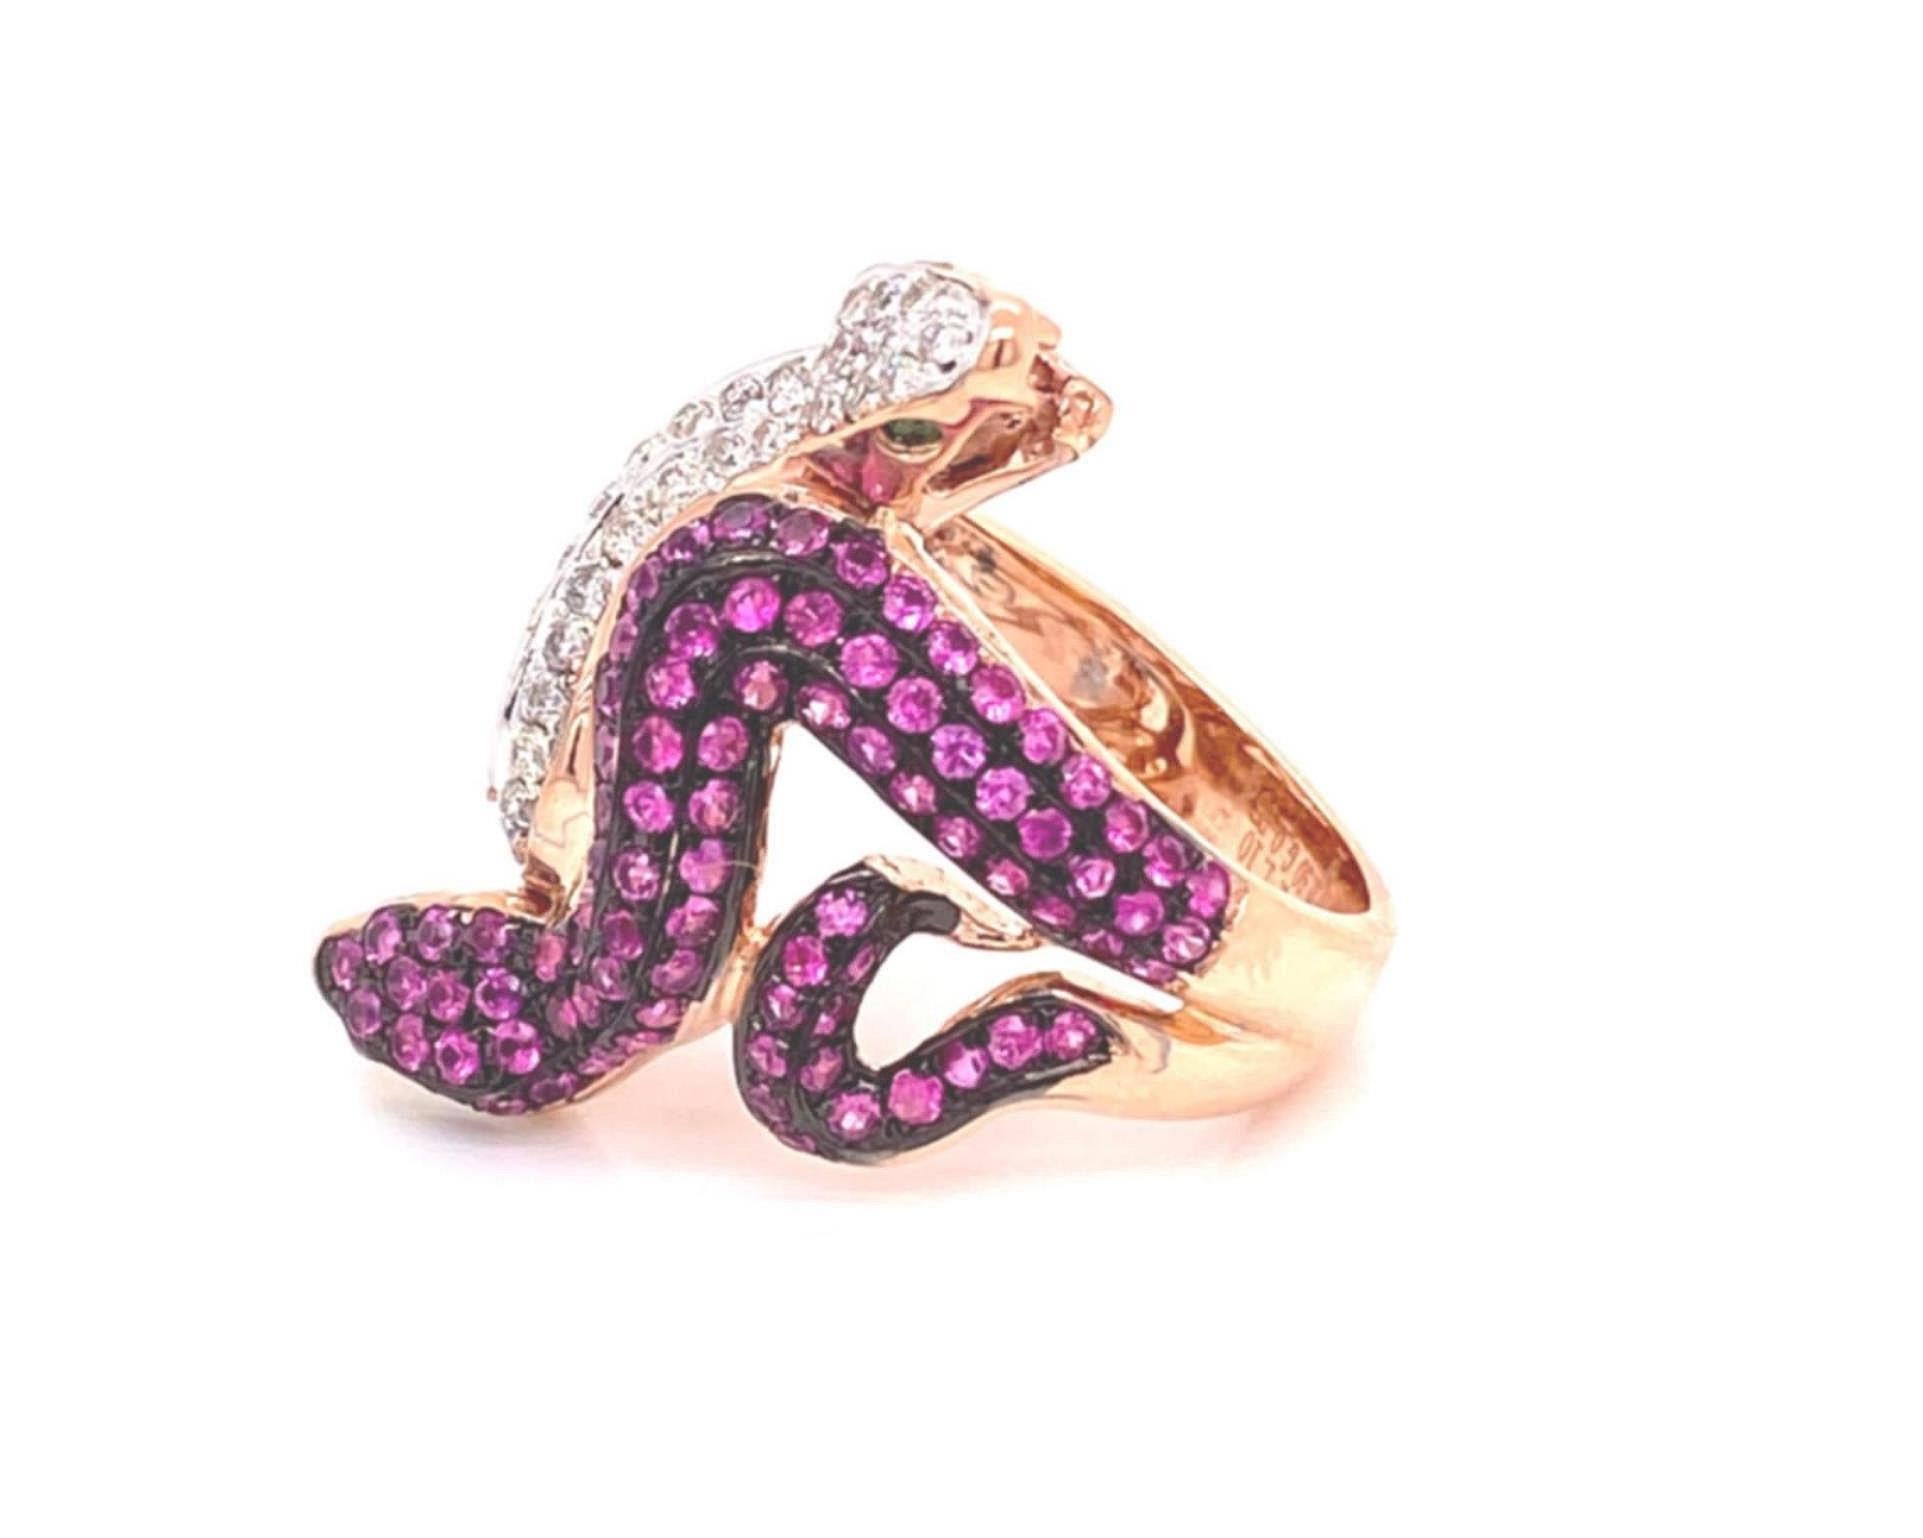 Dies ist ein atemberaubender Ring aus 18 Karat Rosé- und Weißgold mit polierter Oberfläche, der zwei Schlangen mit gegenüberliegenden Köpfen am langen Teil des Rings zeigt. Die eine Schlange ist mit Rubinen in schwarzem Rhodium, Roségold und grünen